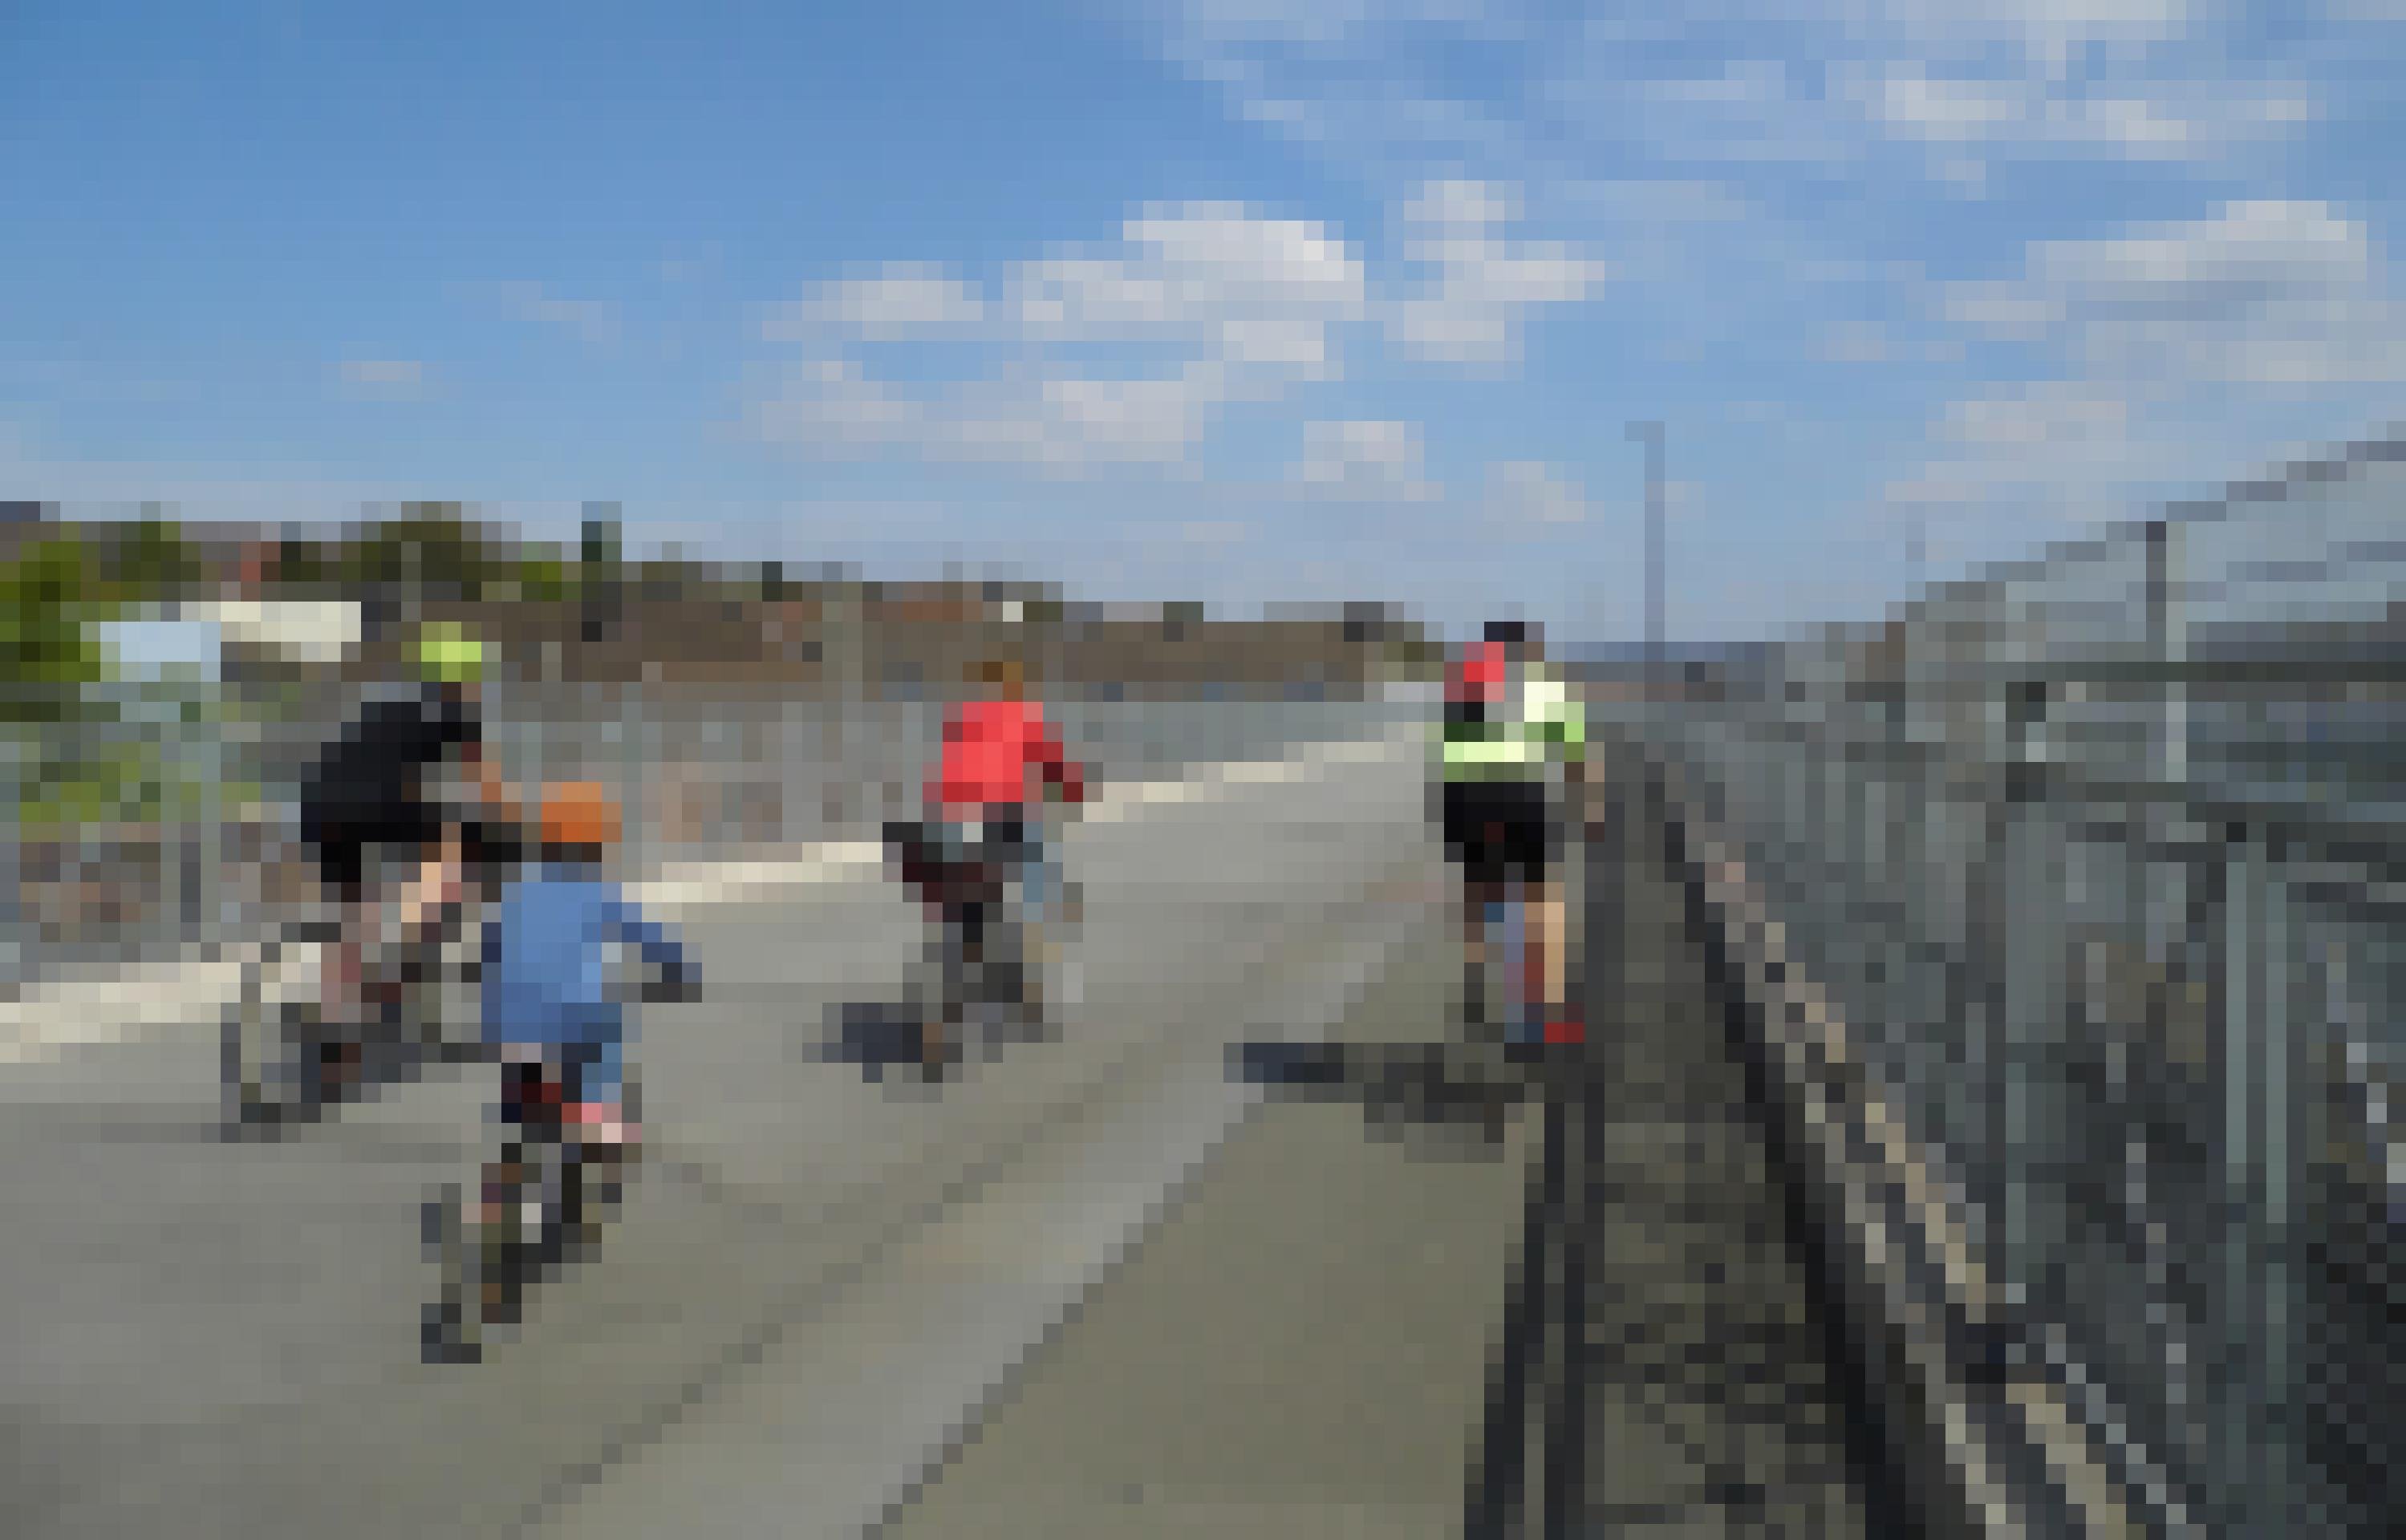 Vier junge Personen fahren unter blauem Himmel mit ihrem Rad über die Brücke.